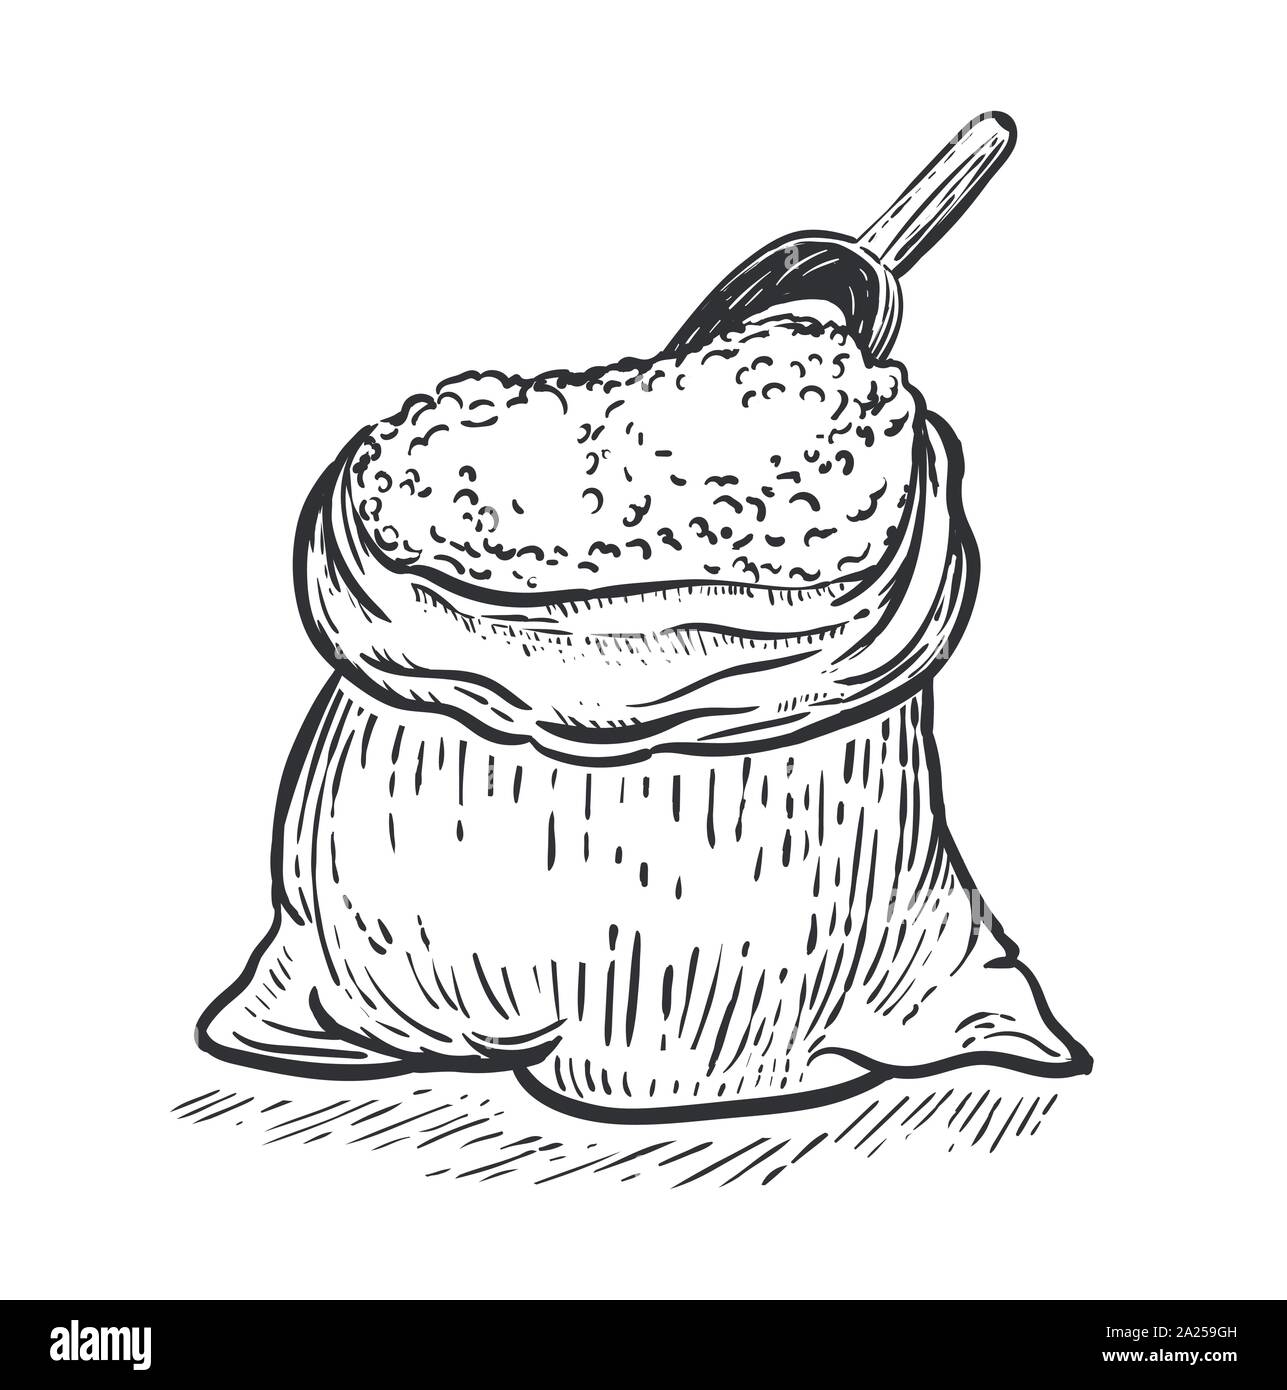 Bolsa de arpillera con boca de harina sobre fondo blanco. Dibujar a mano ilustración vectorial en estilo de grabado Ilustración del Vector